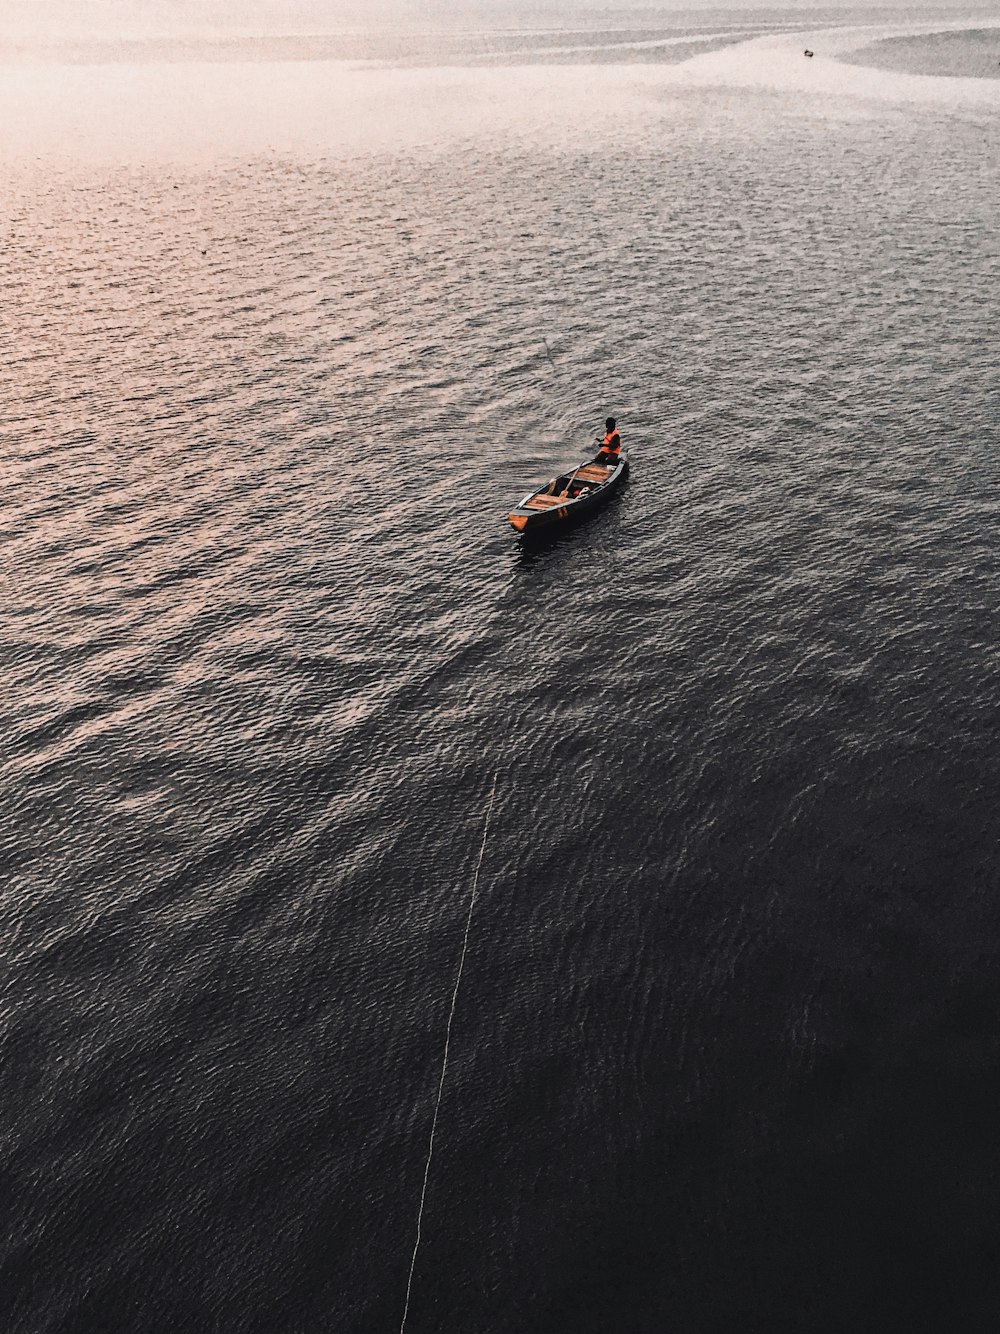 2 people riding on orange kayak on blue sea during daytime